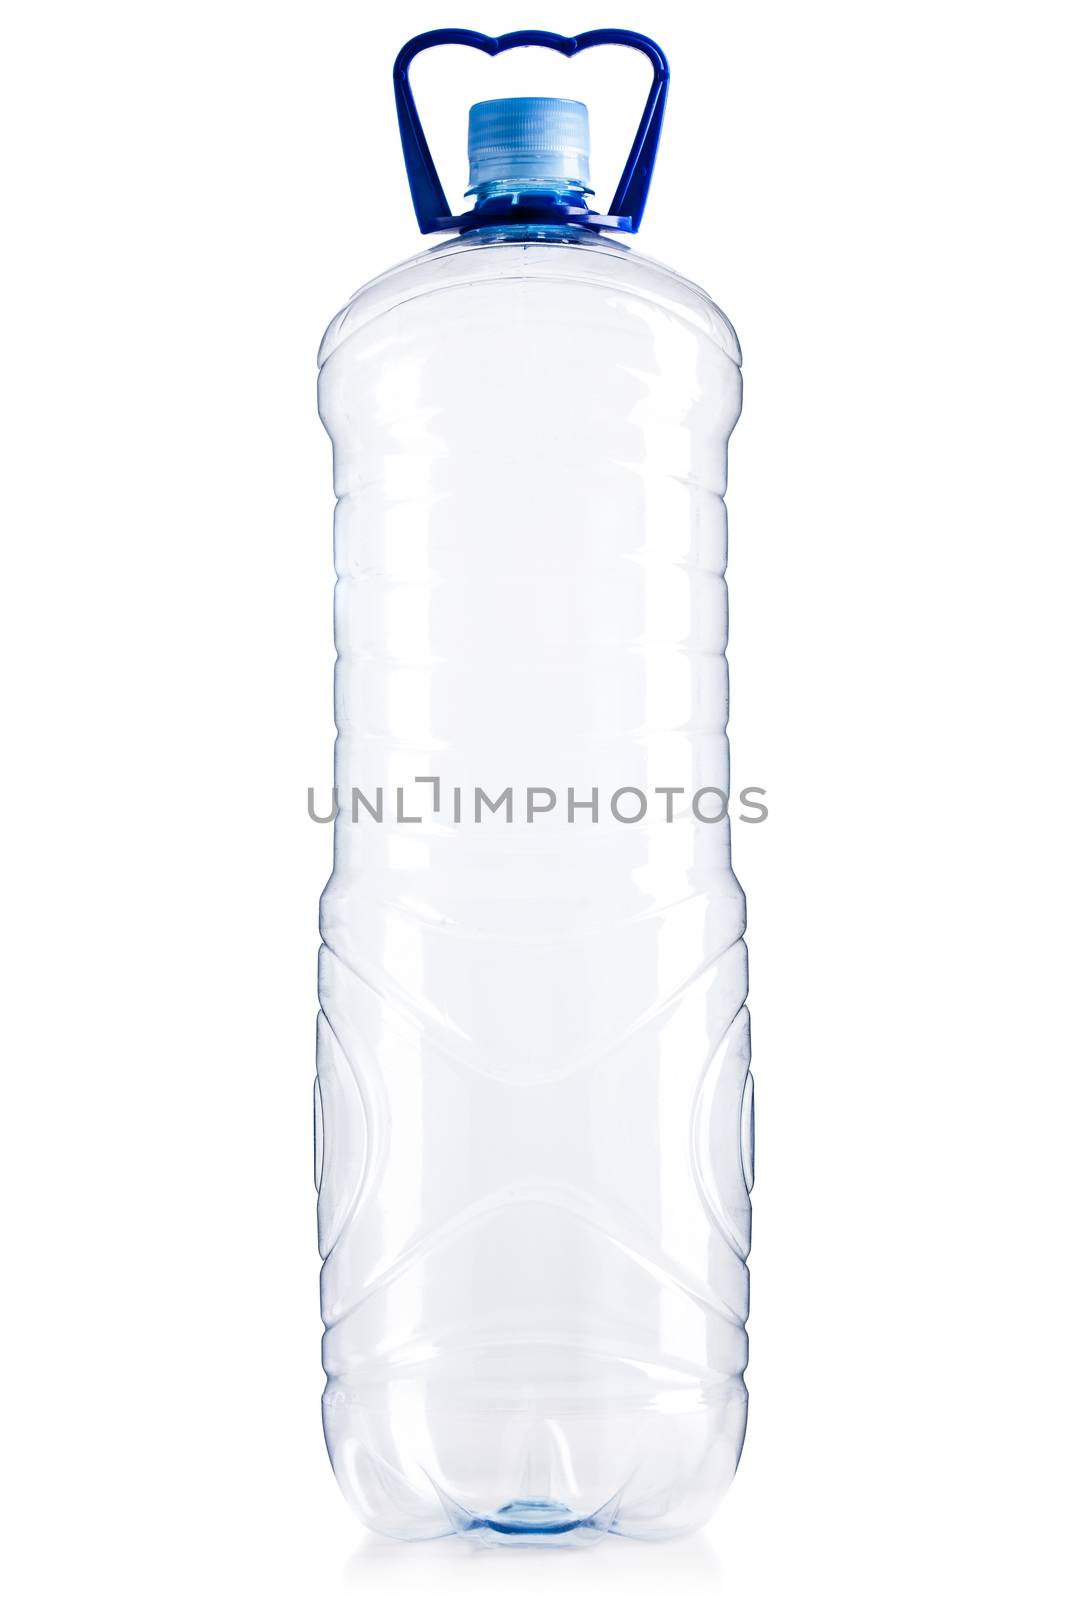 empty plastic bottle, isolated on white background